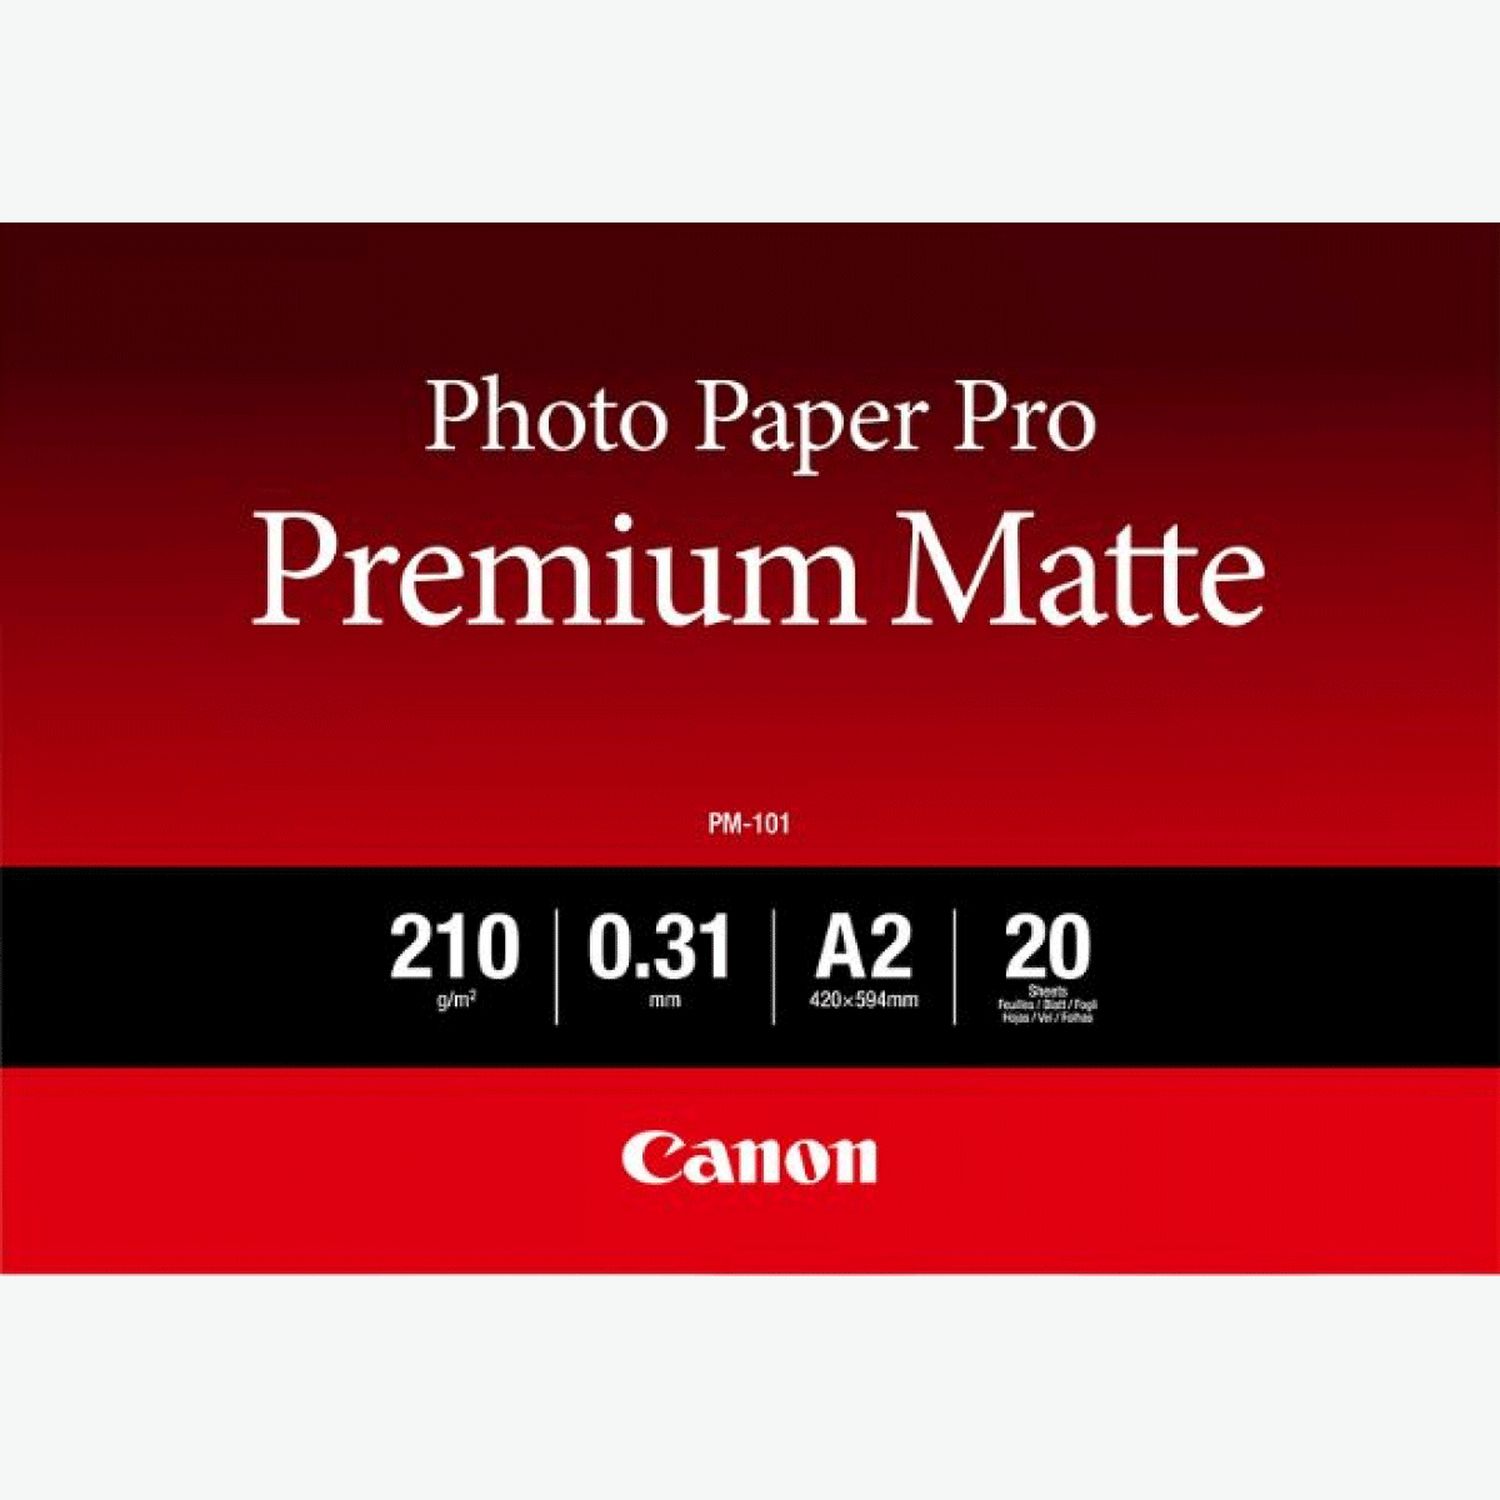 Premium Glossy Photo Paper - 10x15cm - 2x 40 Feuilles, Papiers et supports, Encre & papier, Produits